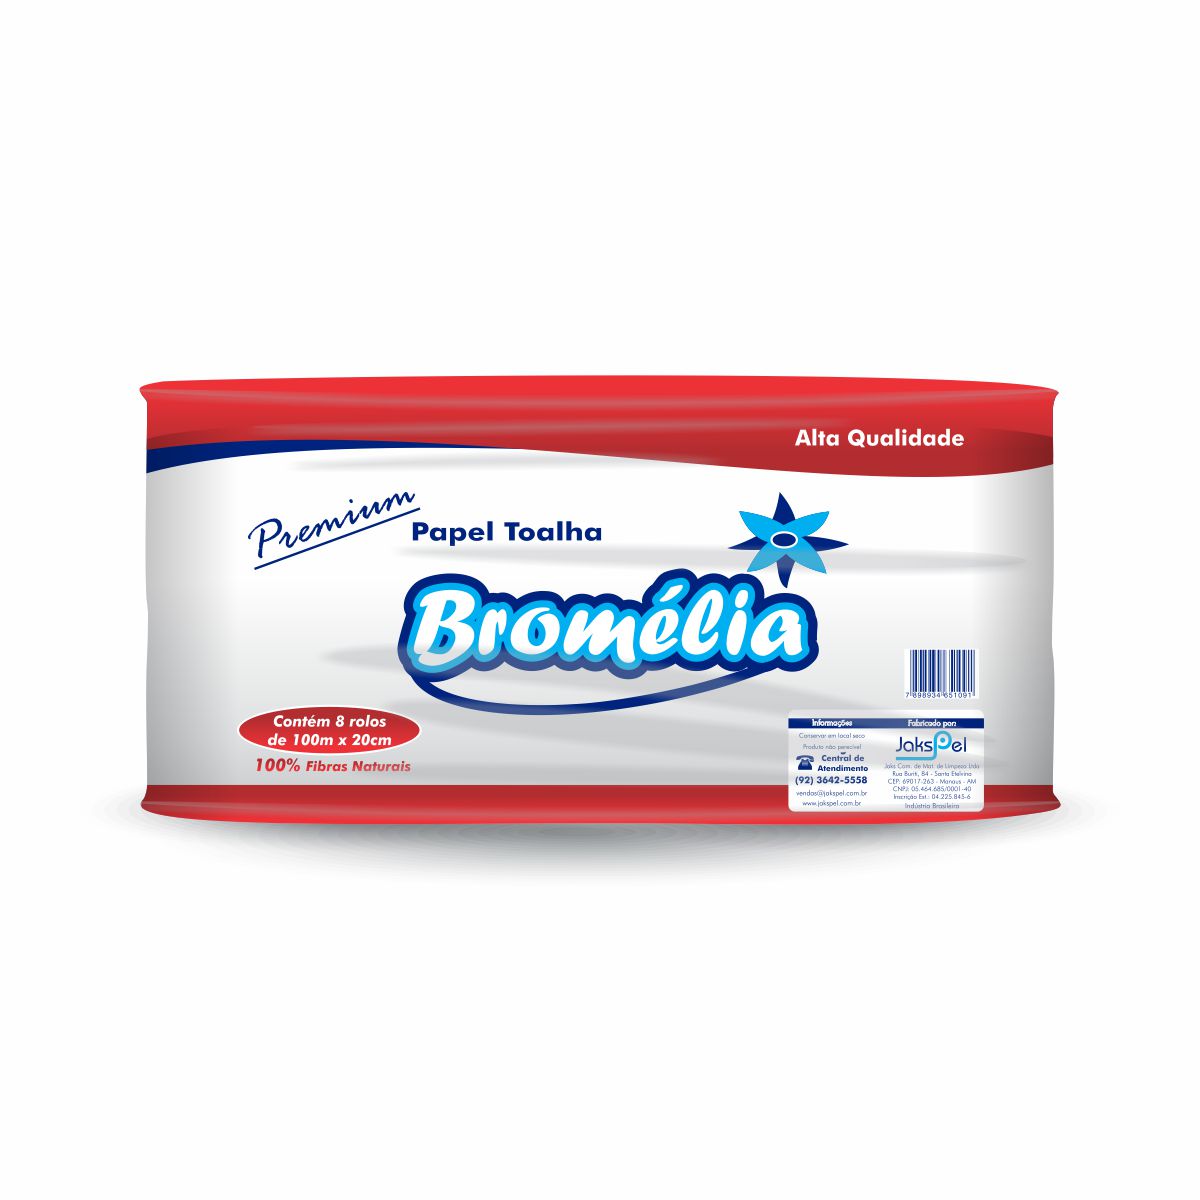 Bromélia 8 / 100 Celulose